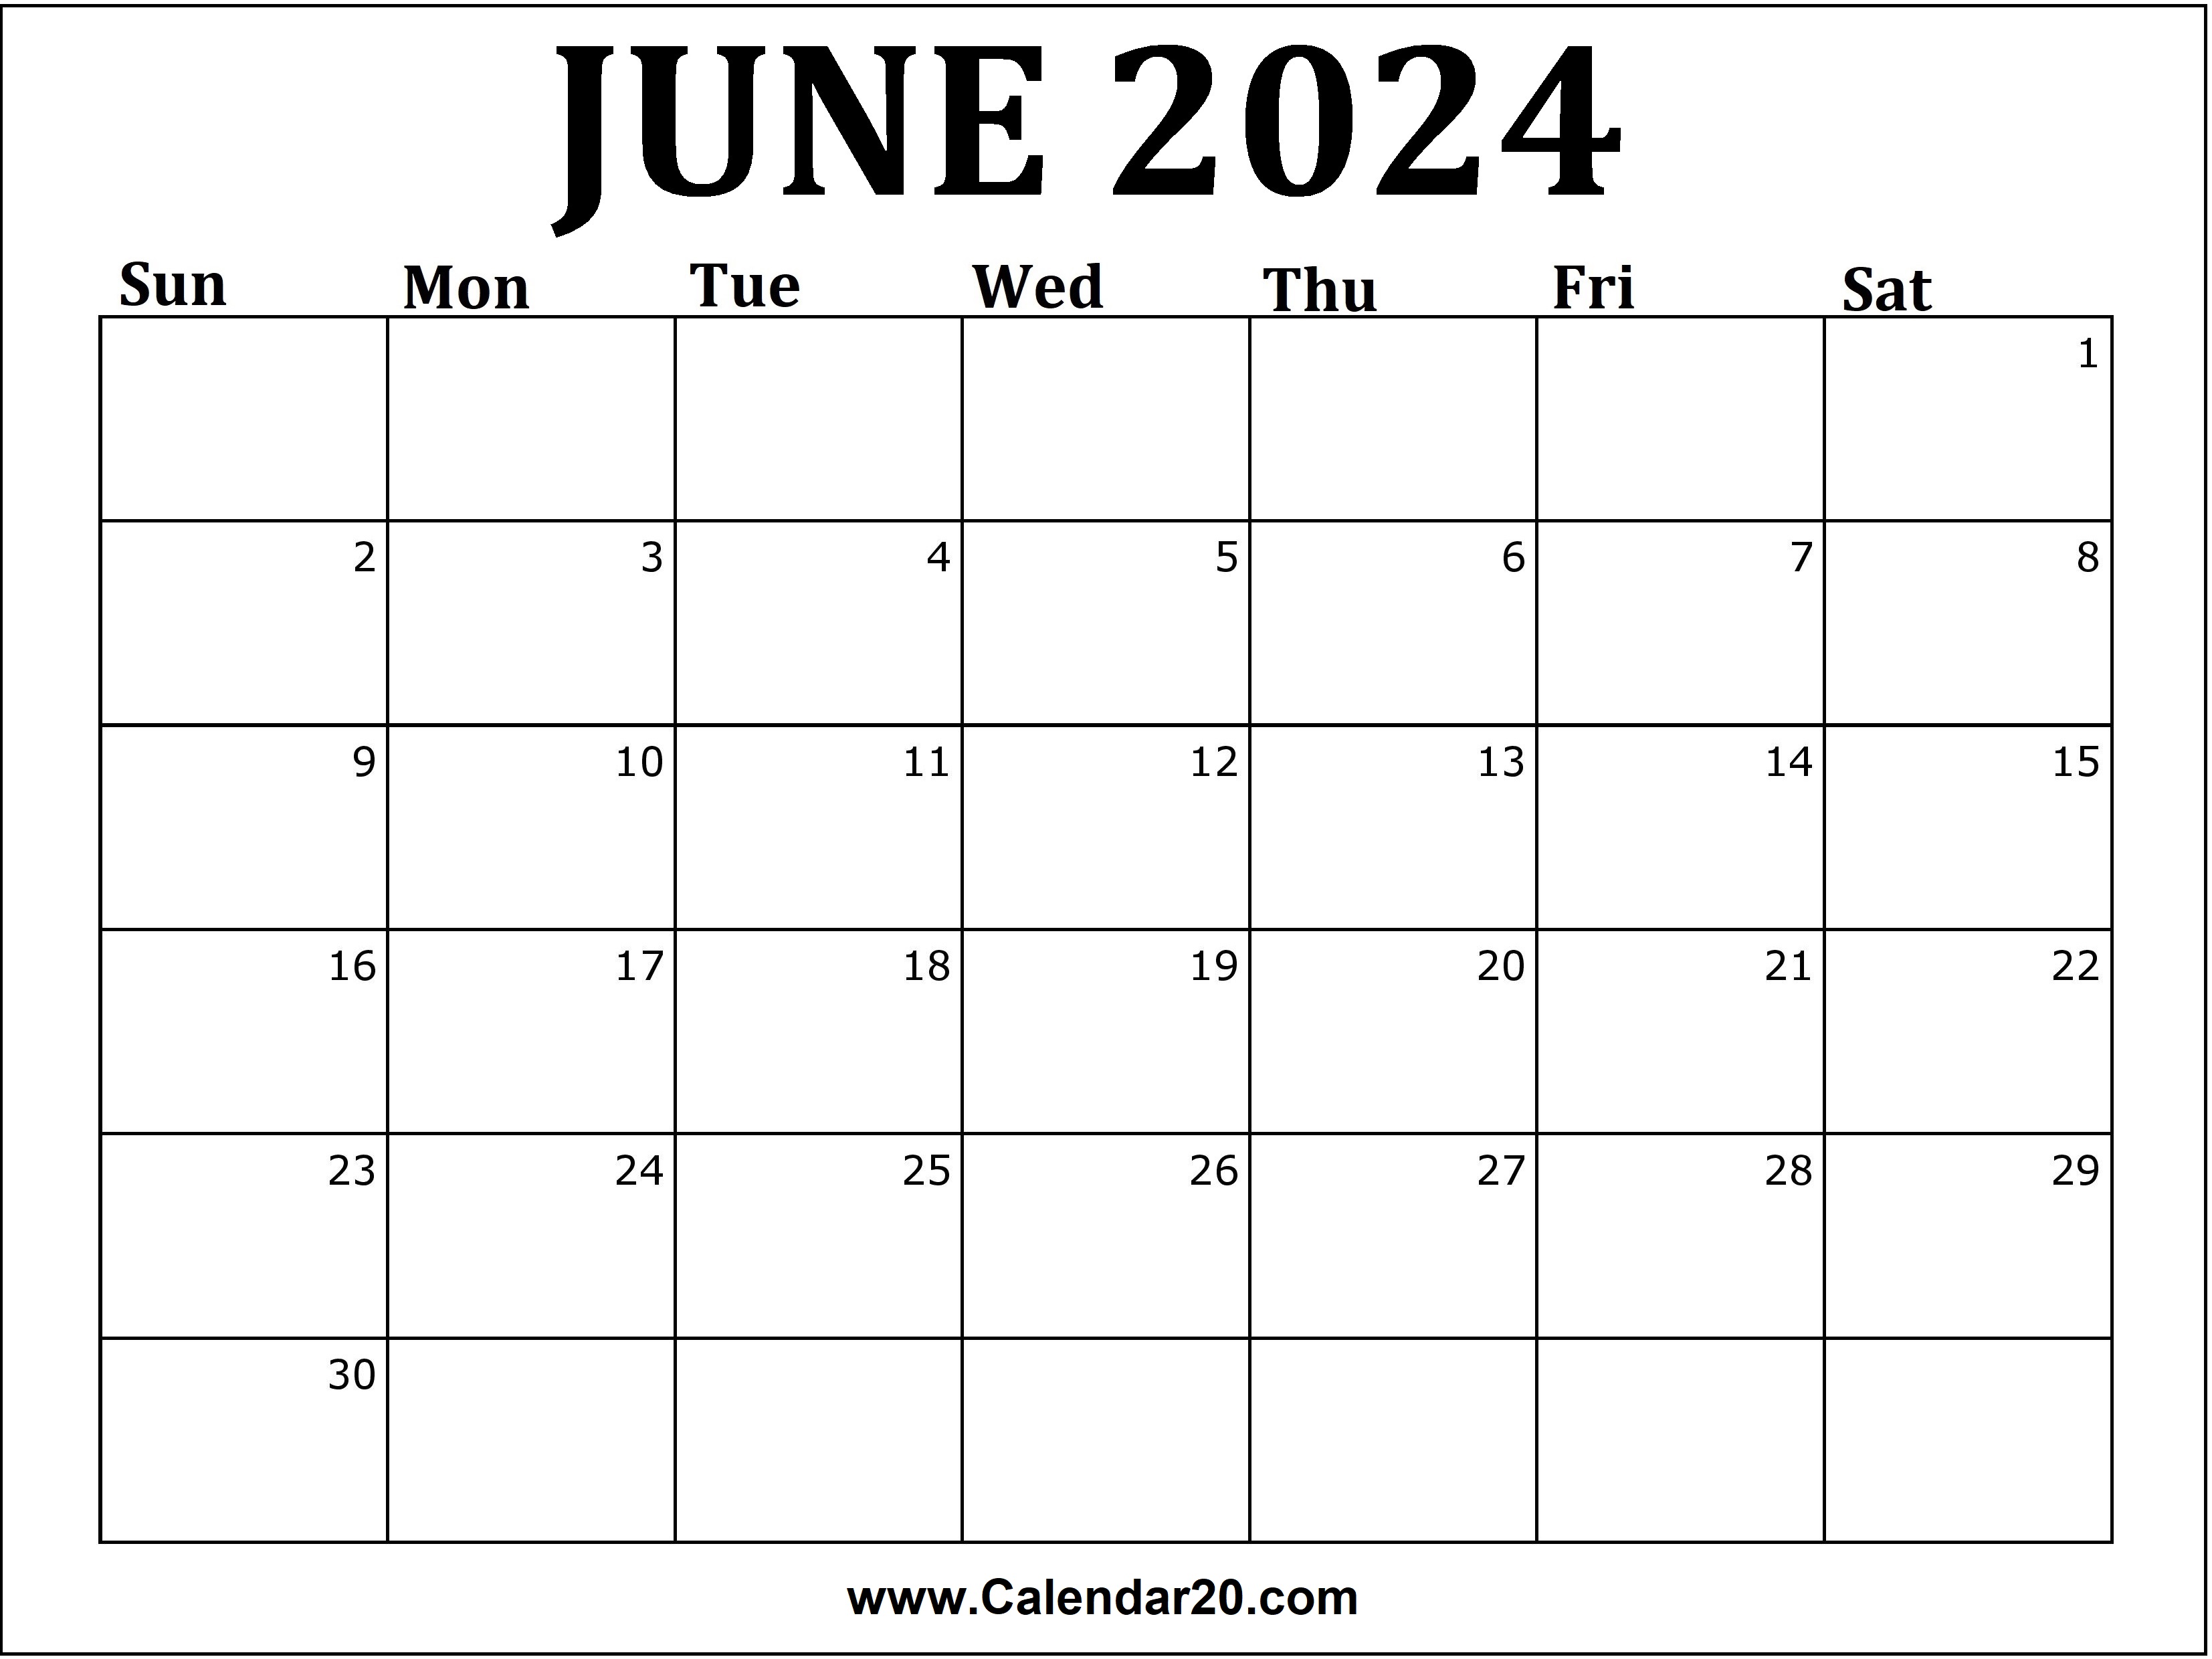 June 2024 Calendar Printable - Calendar20.com